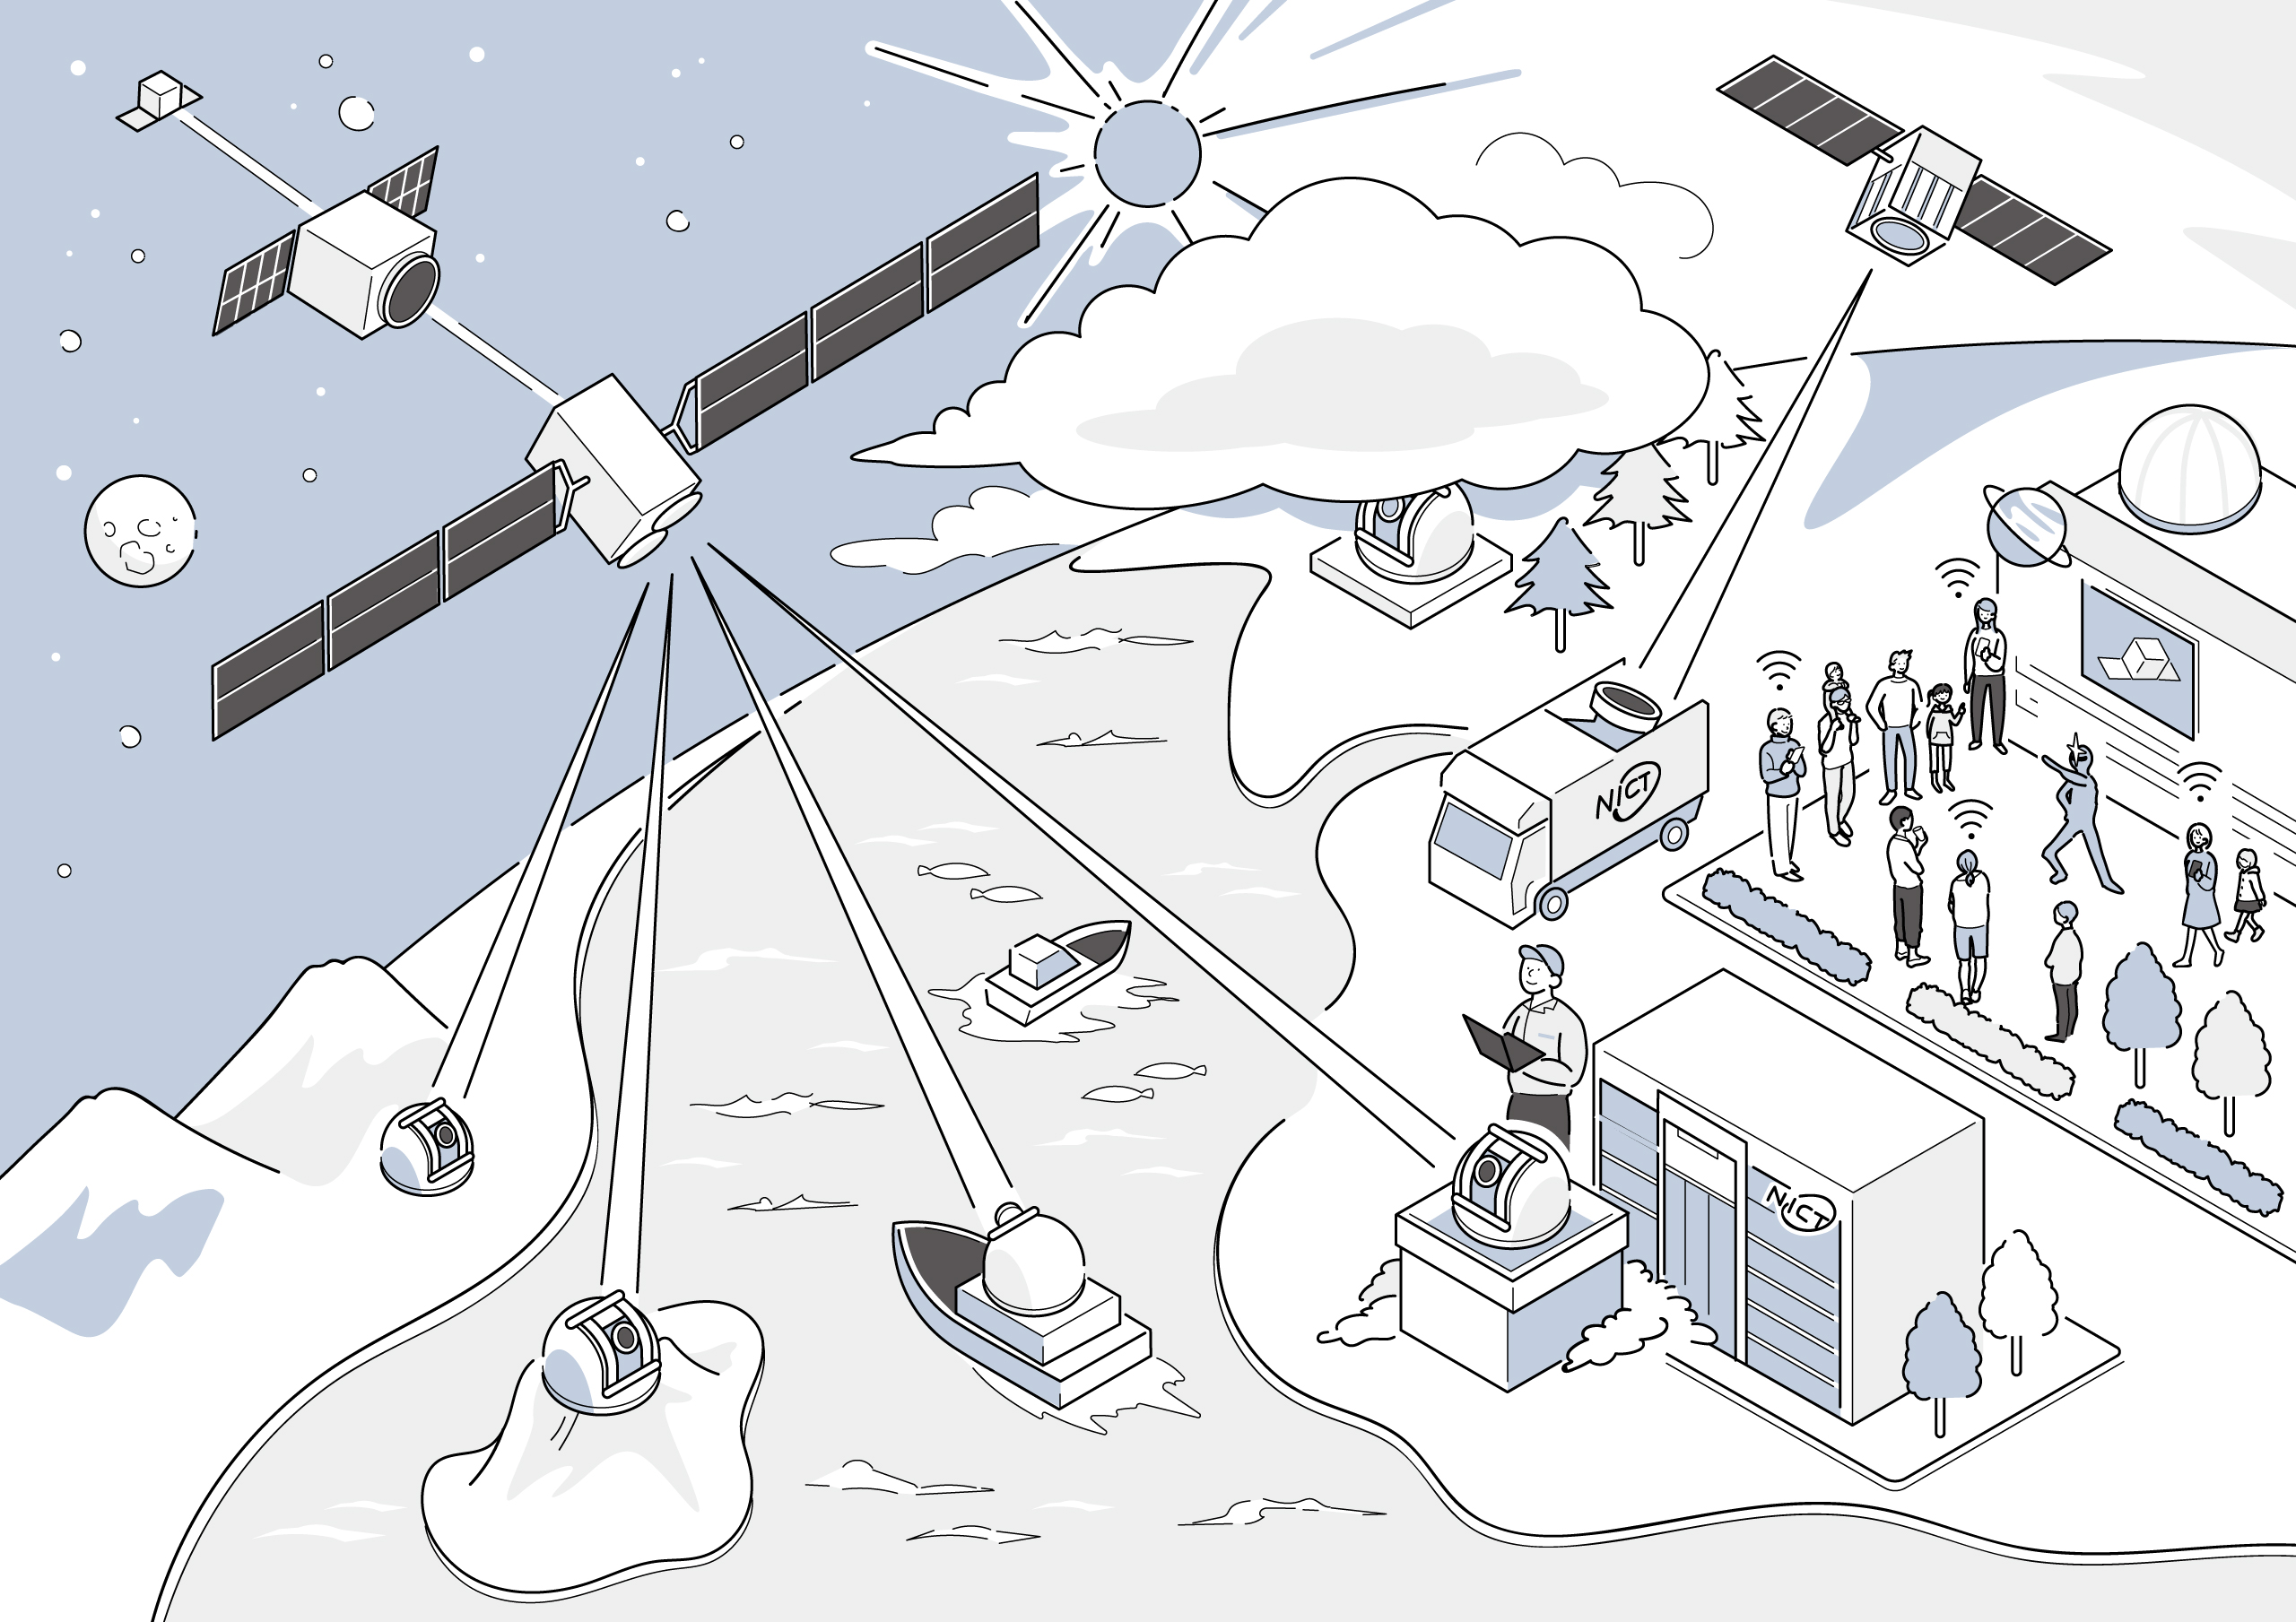 10Gbpsの双方向衛星通信を実現する光衛星通信システム（HICALI）の利用イメージ